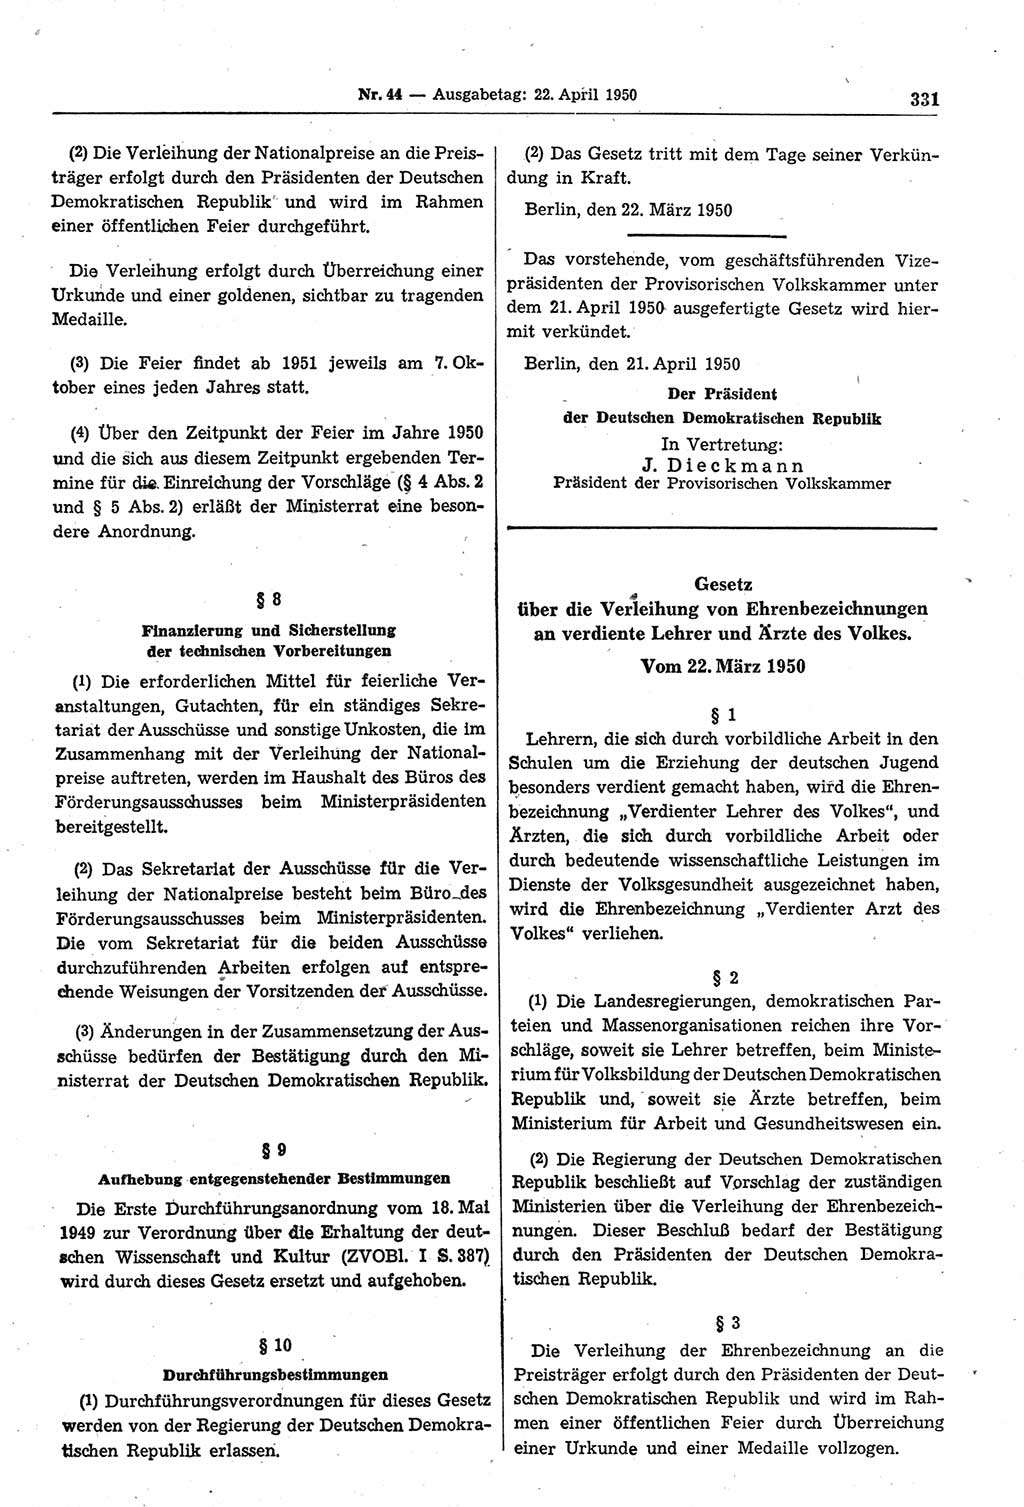 Gesetzblatt (GBl.) der Deutschen Demokratischen Republik (DDR) 1950, Seite 331 (GBl. DDR 1950, S. 331)